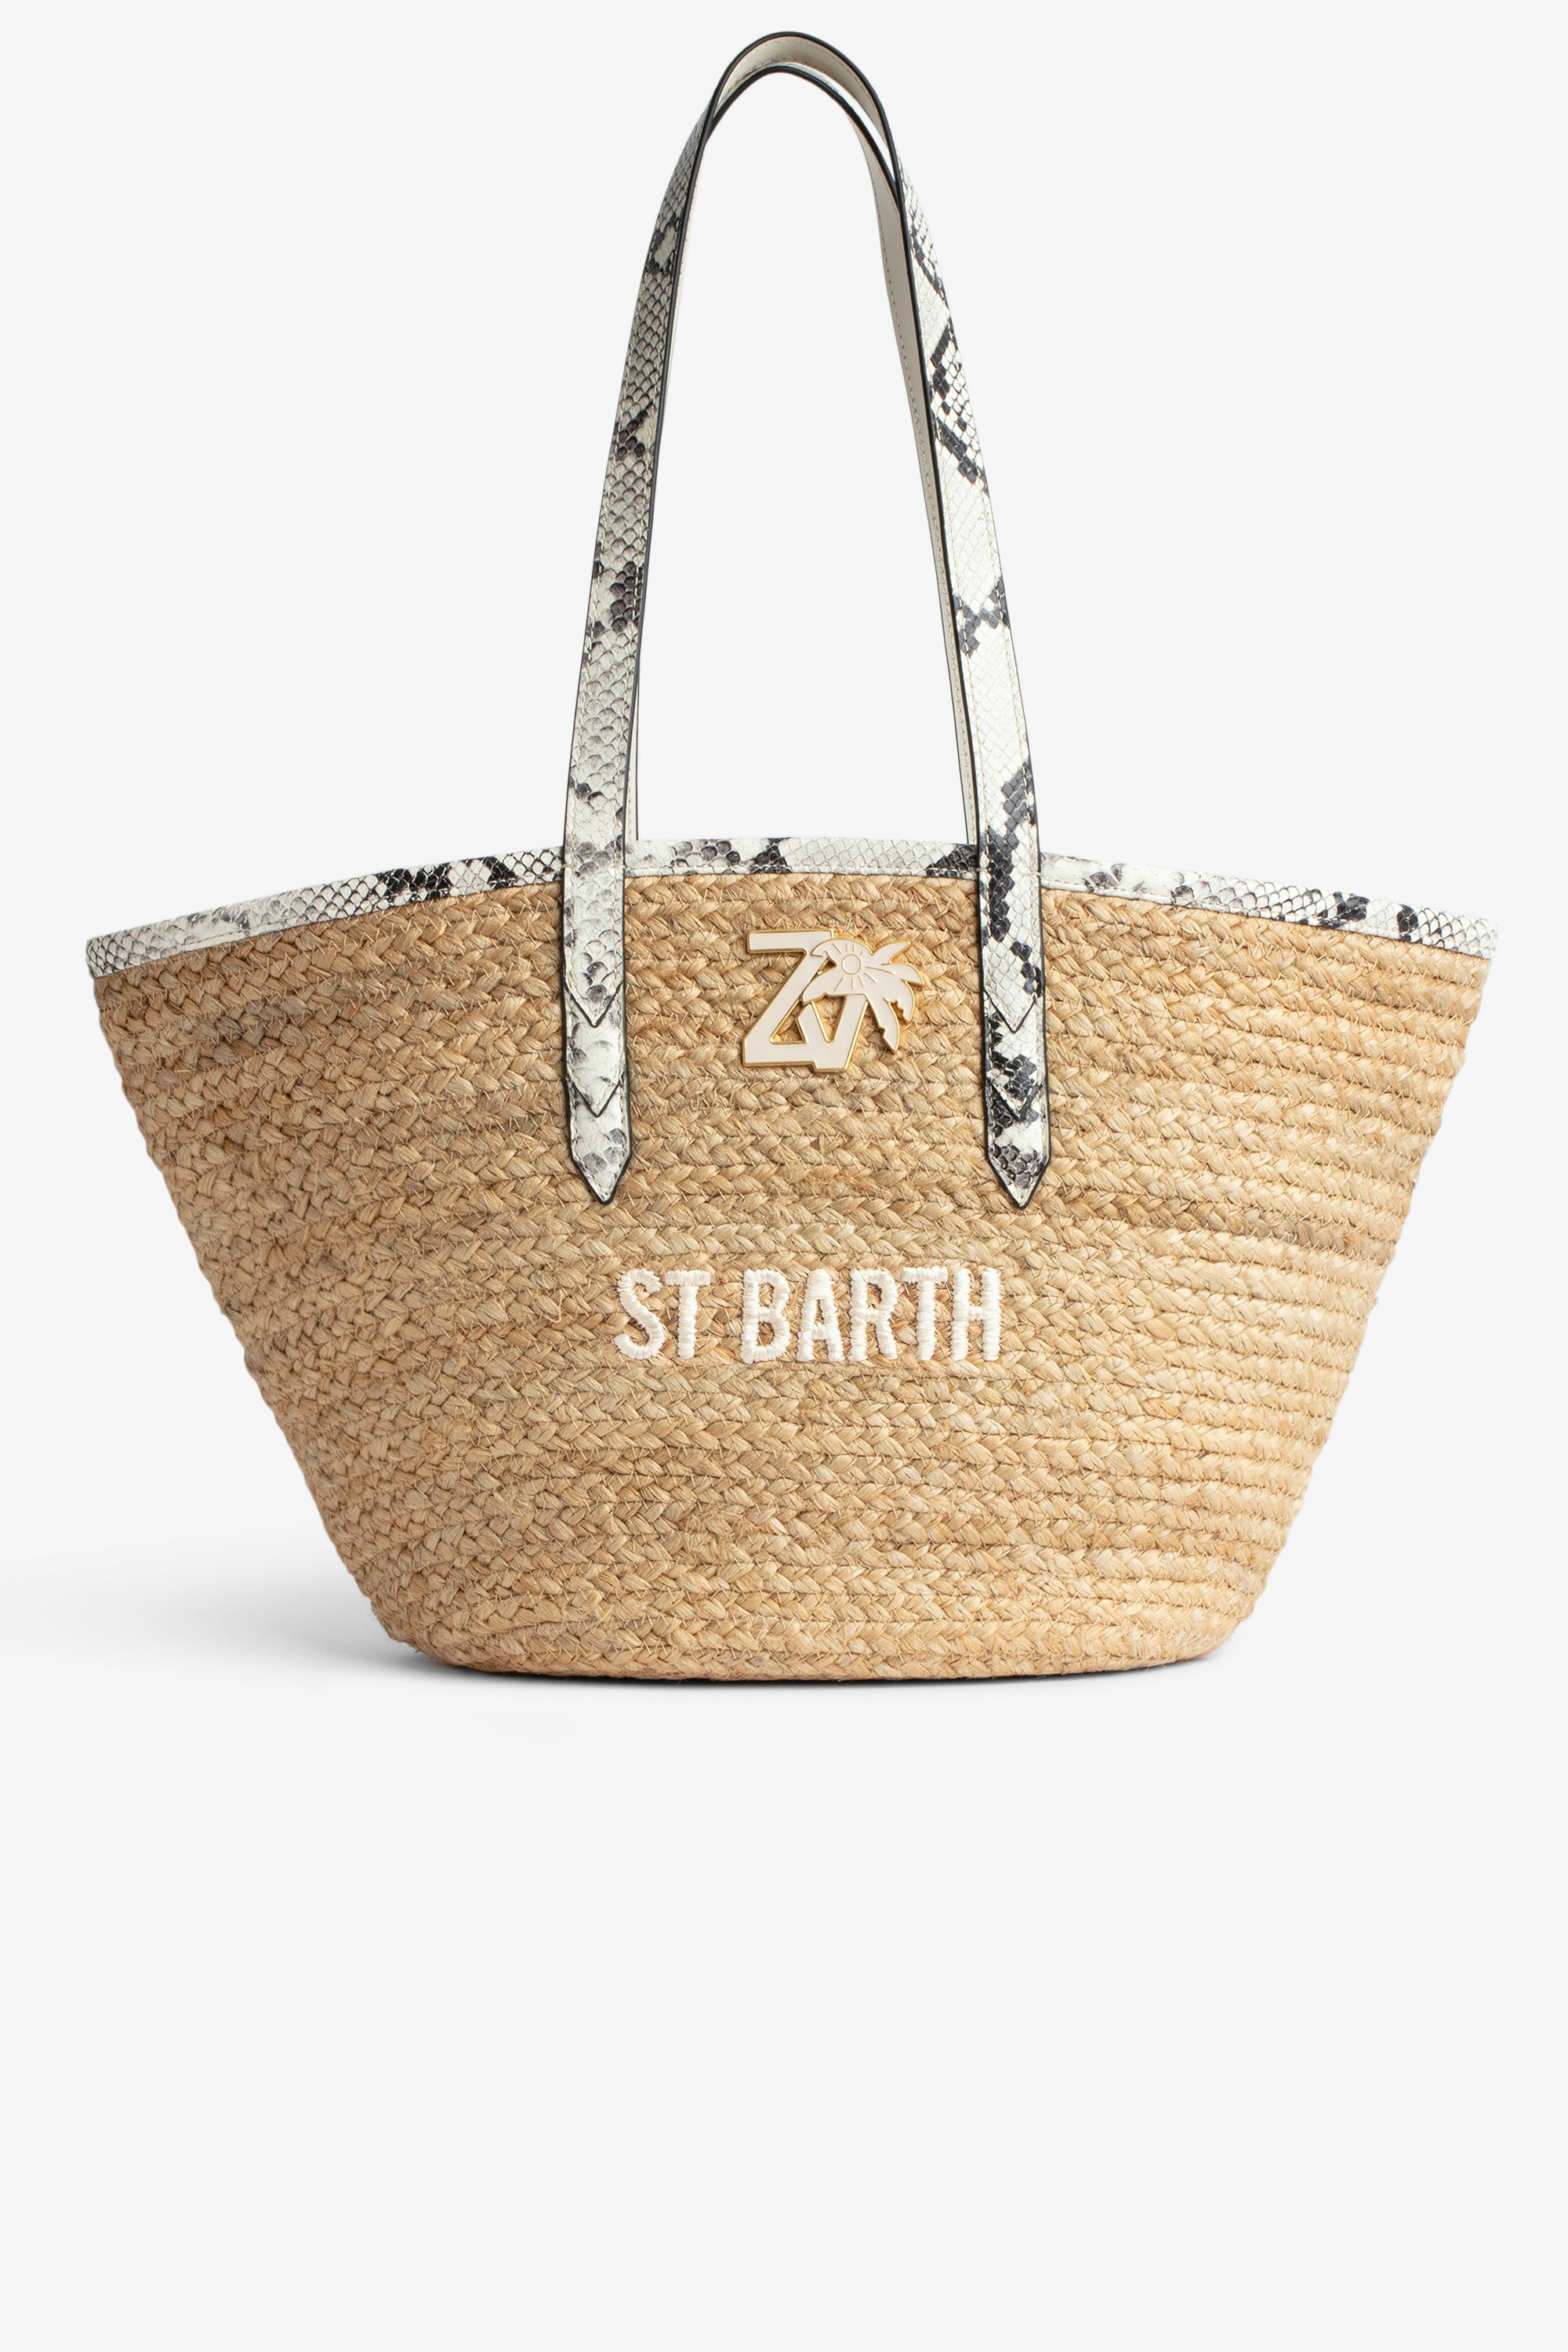 Sac Le Beach Bag - Sac en paille à anses en cuir écru effet python, brodé "St Barth" et orné d'un charm ZV.